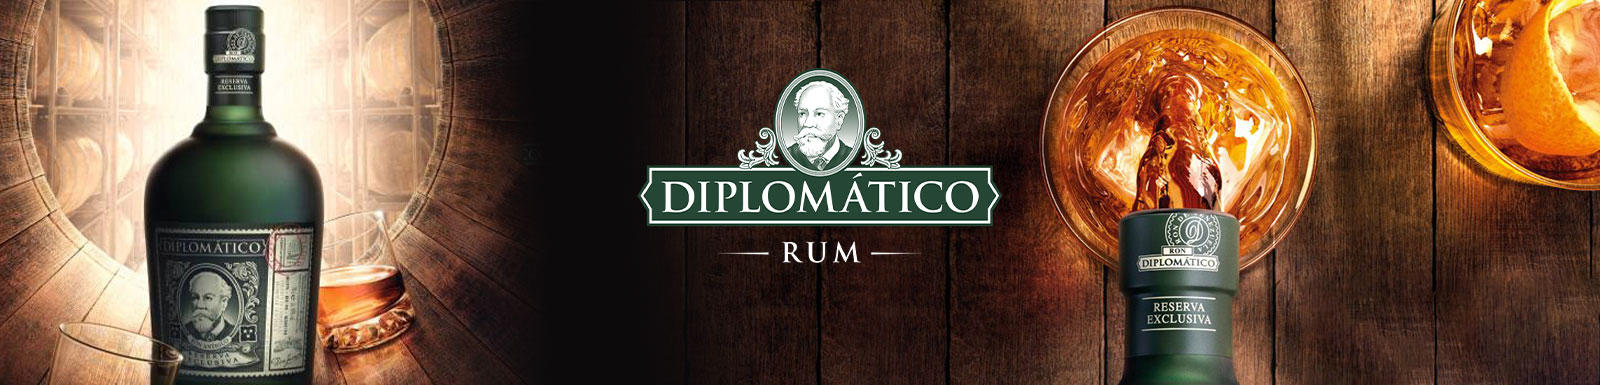 rum diplomatico